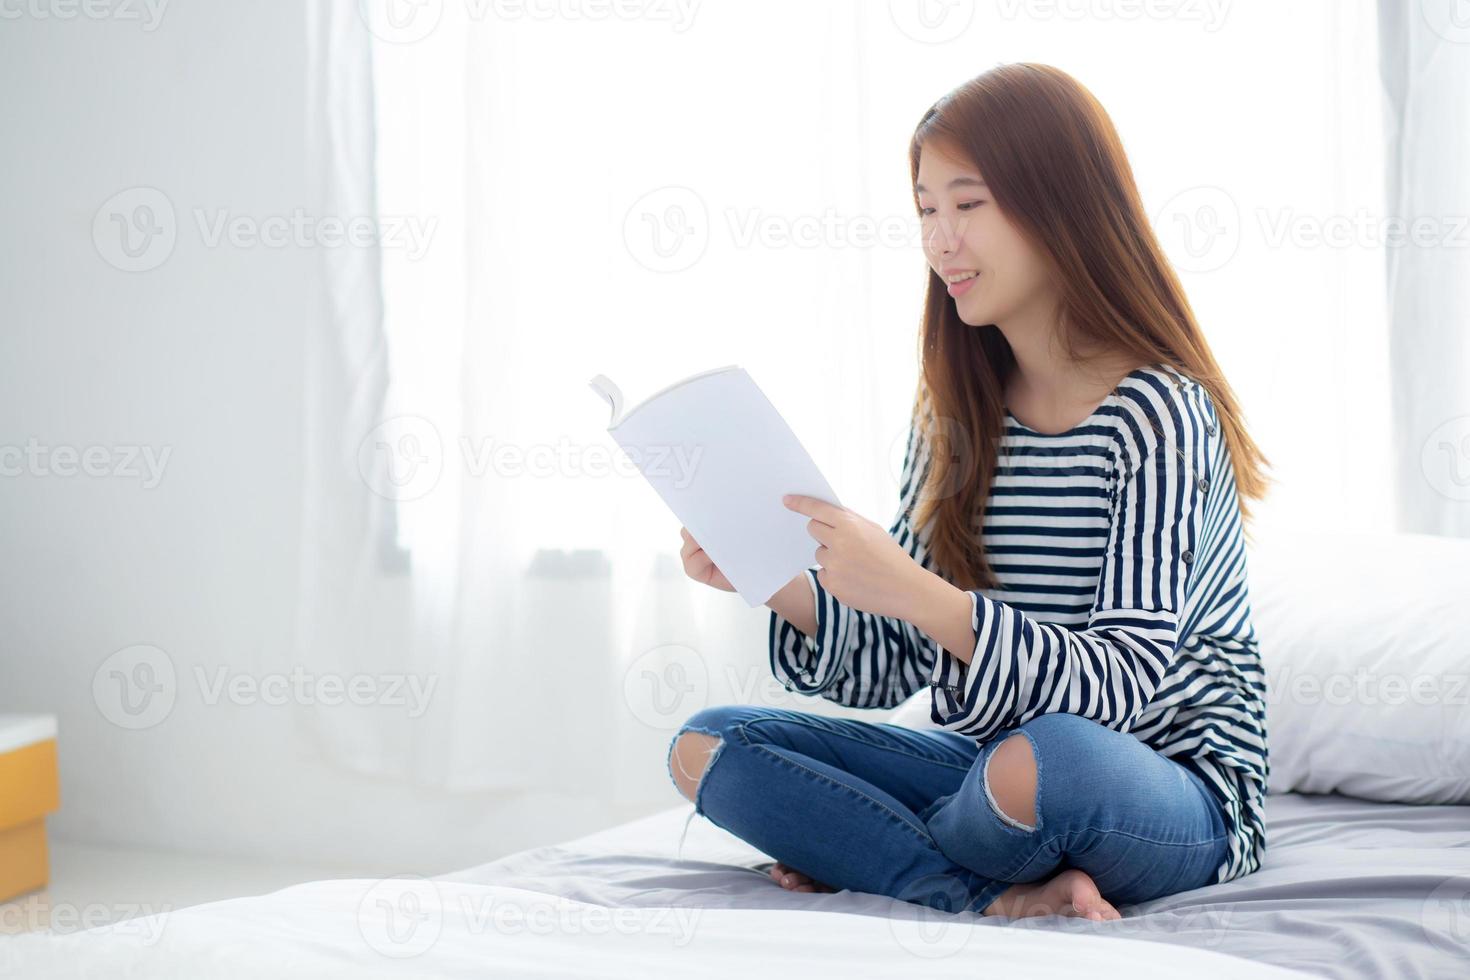 hermosa de retrato joven asiática relajarse sentado leyendo un libro en el dormitorio en casa, niña estudia literatura, educación y concepto de estilo de vida. foto